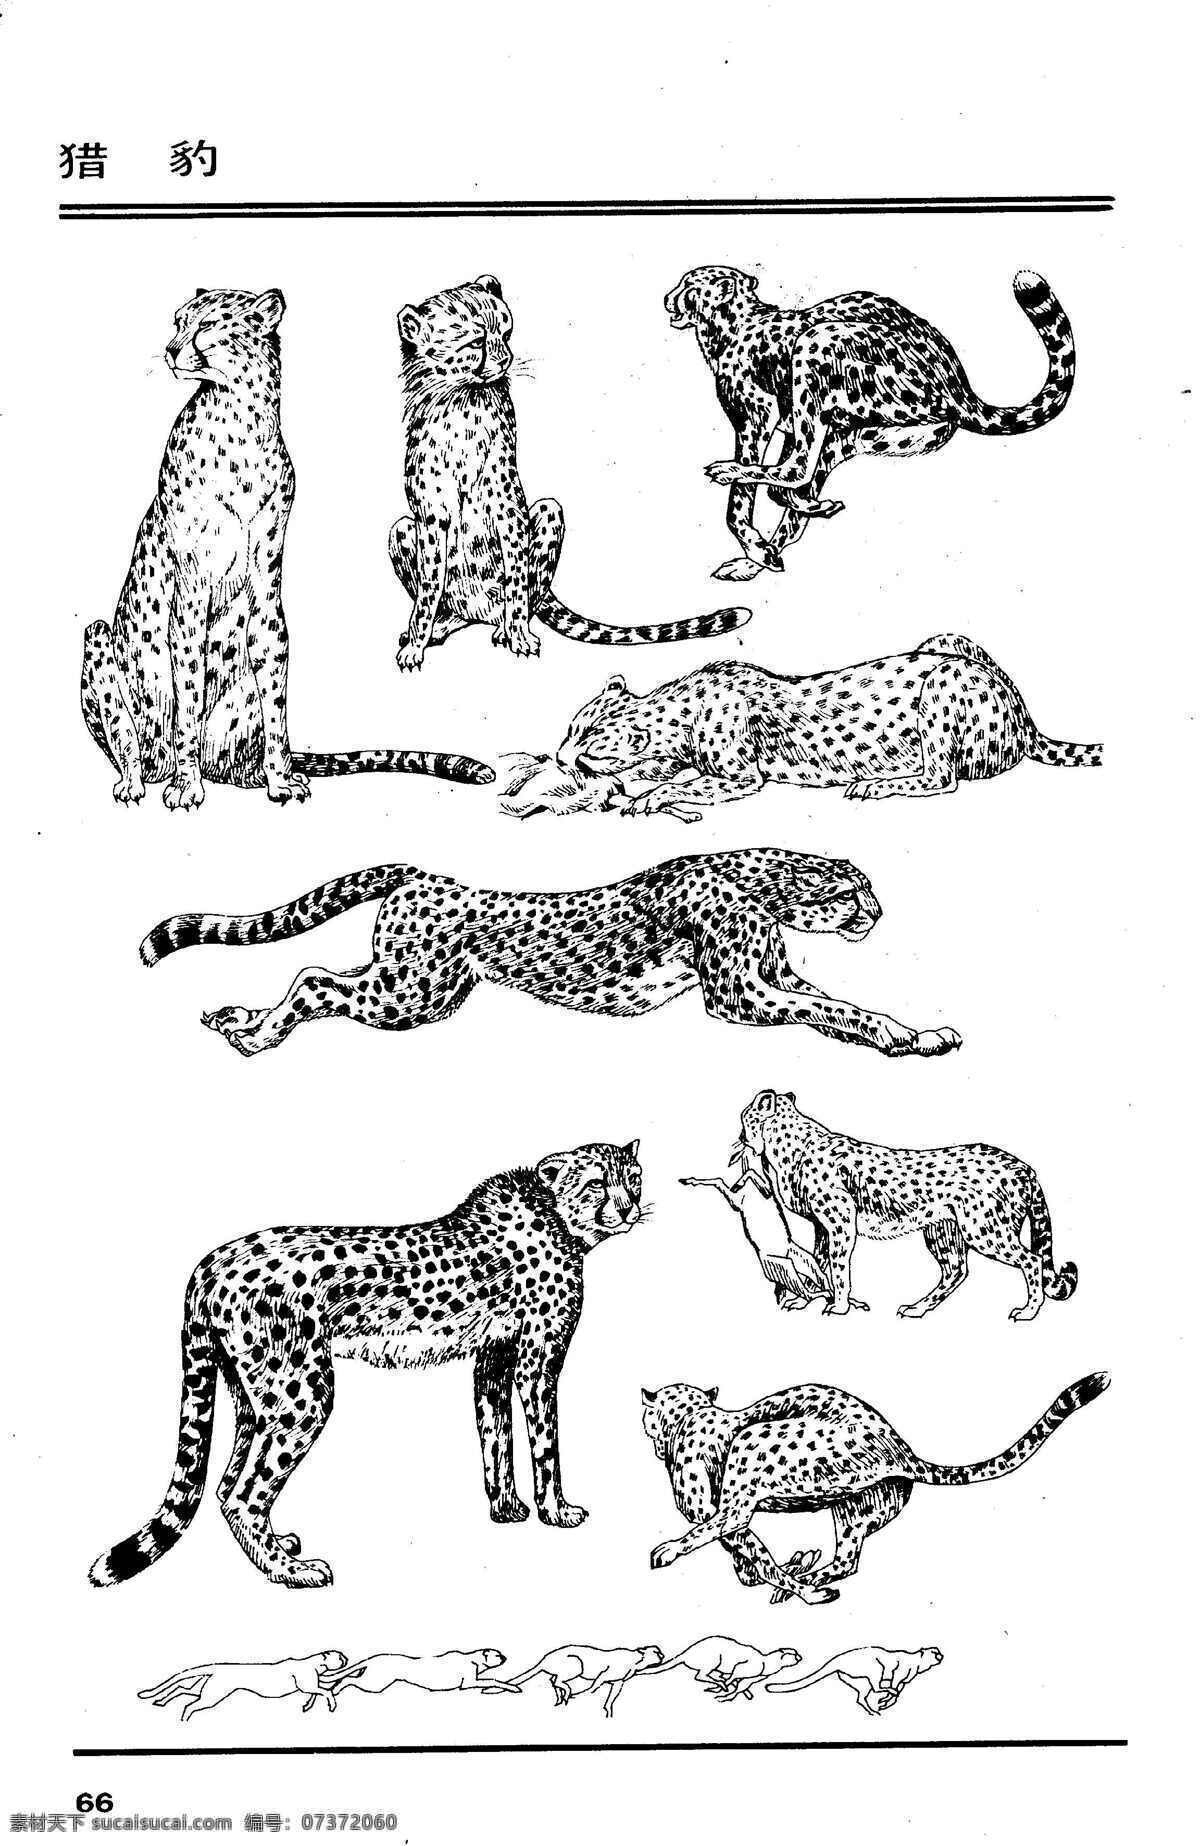 画兽谱69 猎豹 百兽 兽 家禽 猛兽 动物 白描 线描 绘画 美术 禽兽 野生动物 画兽谱 豹 生物世界 设计图库